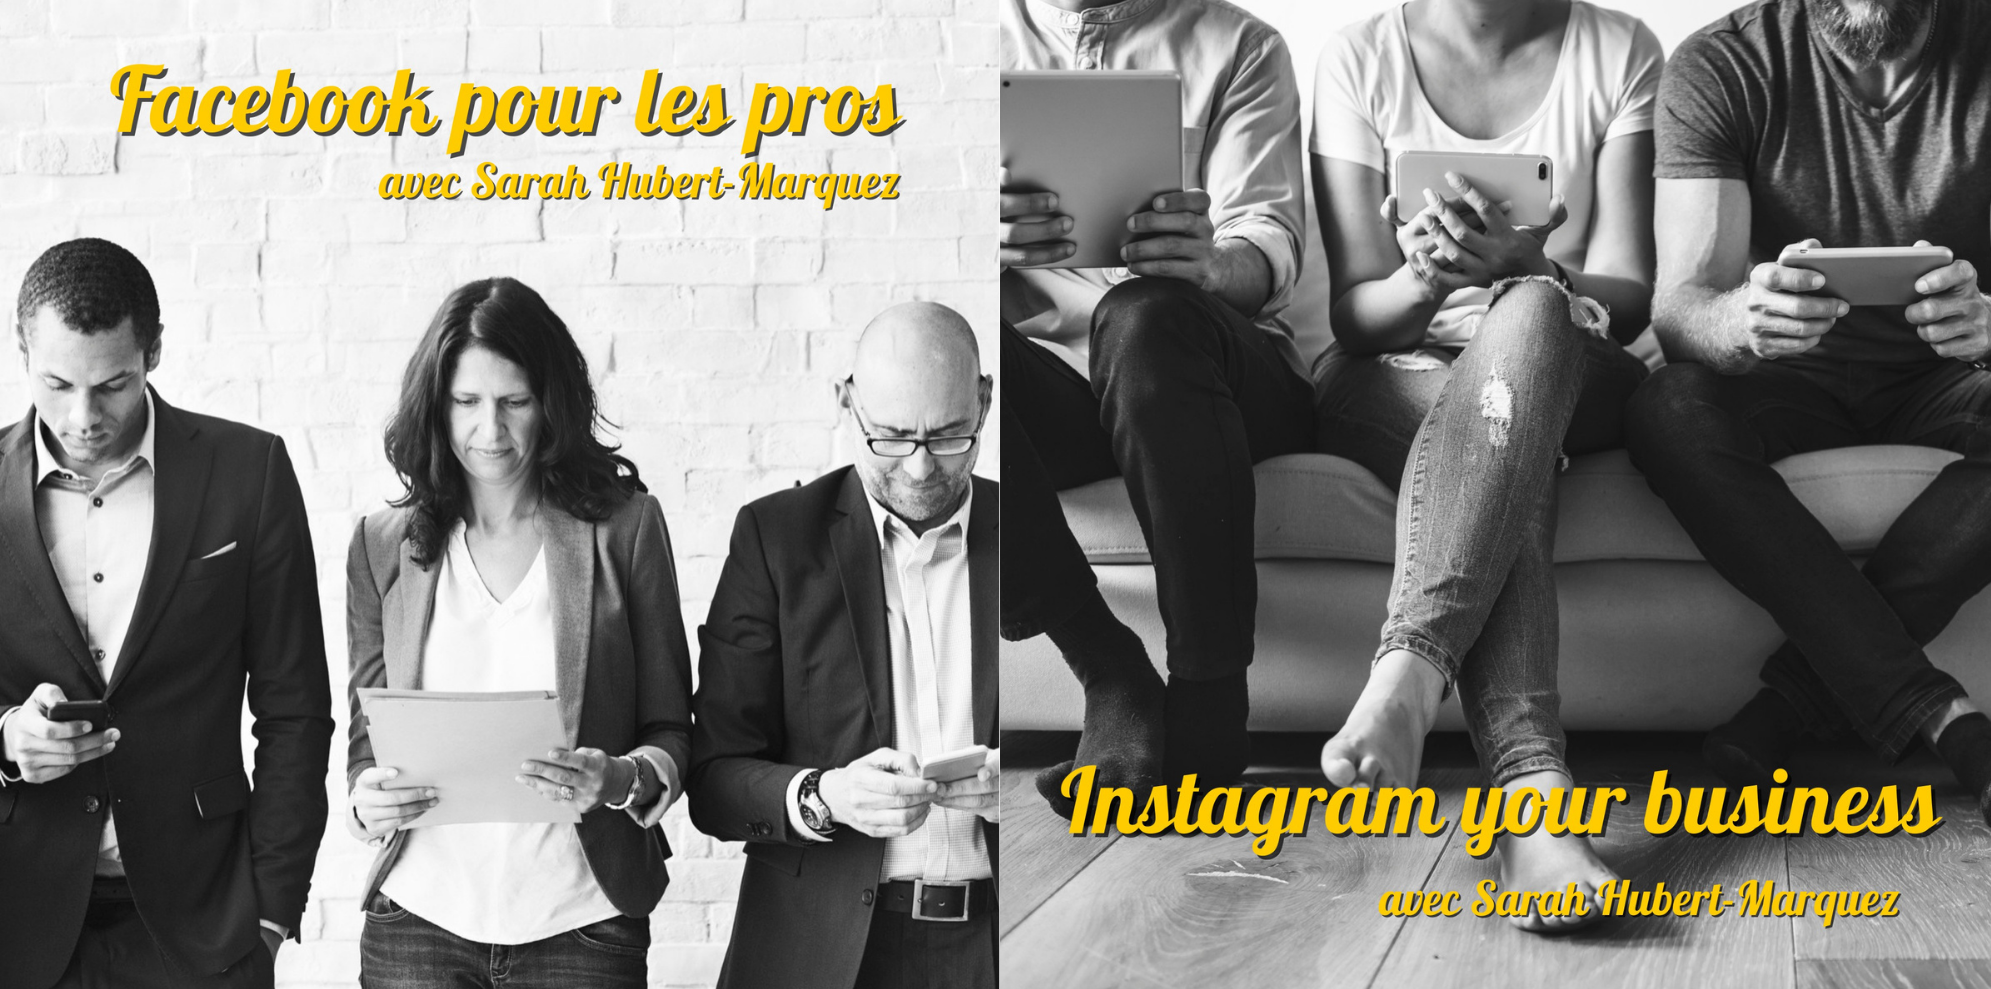 Ateliers Facebook pour les pros & Instagram your business